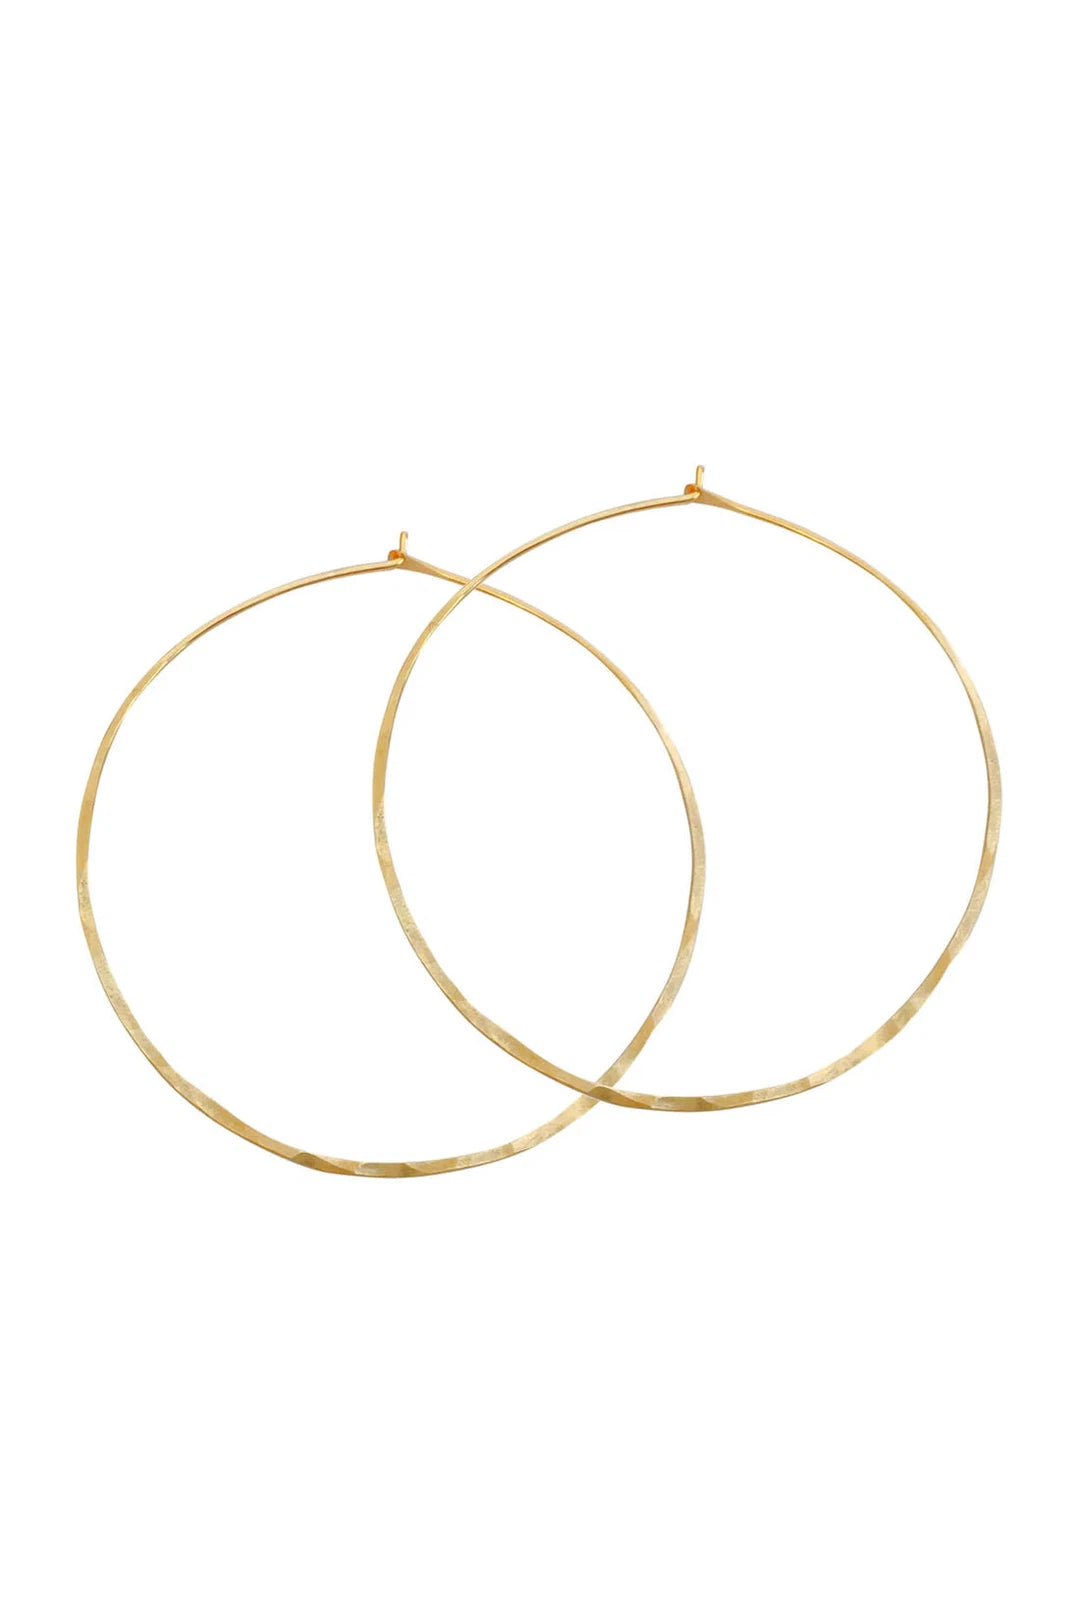 Hammered hoop earrings large, gold